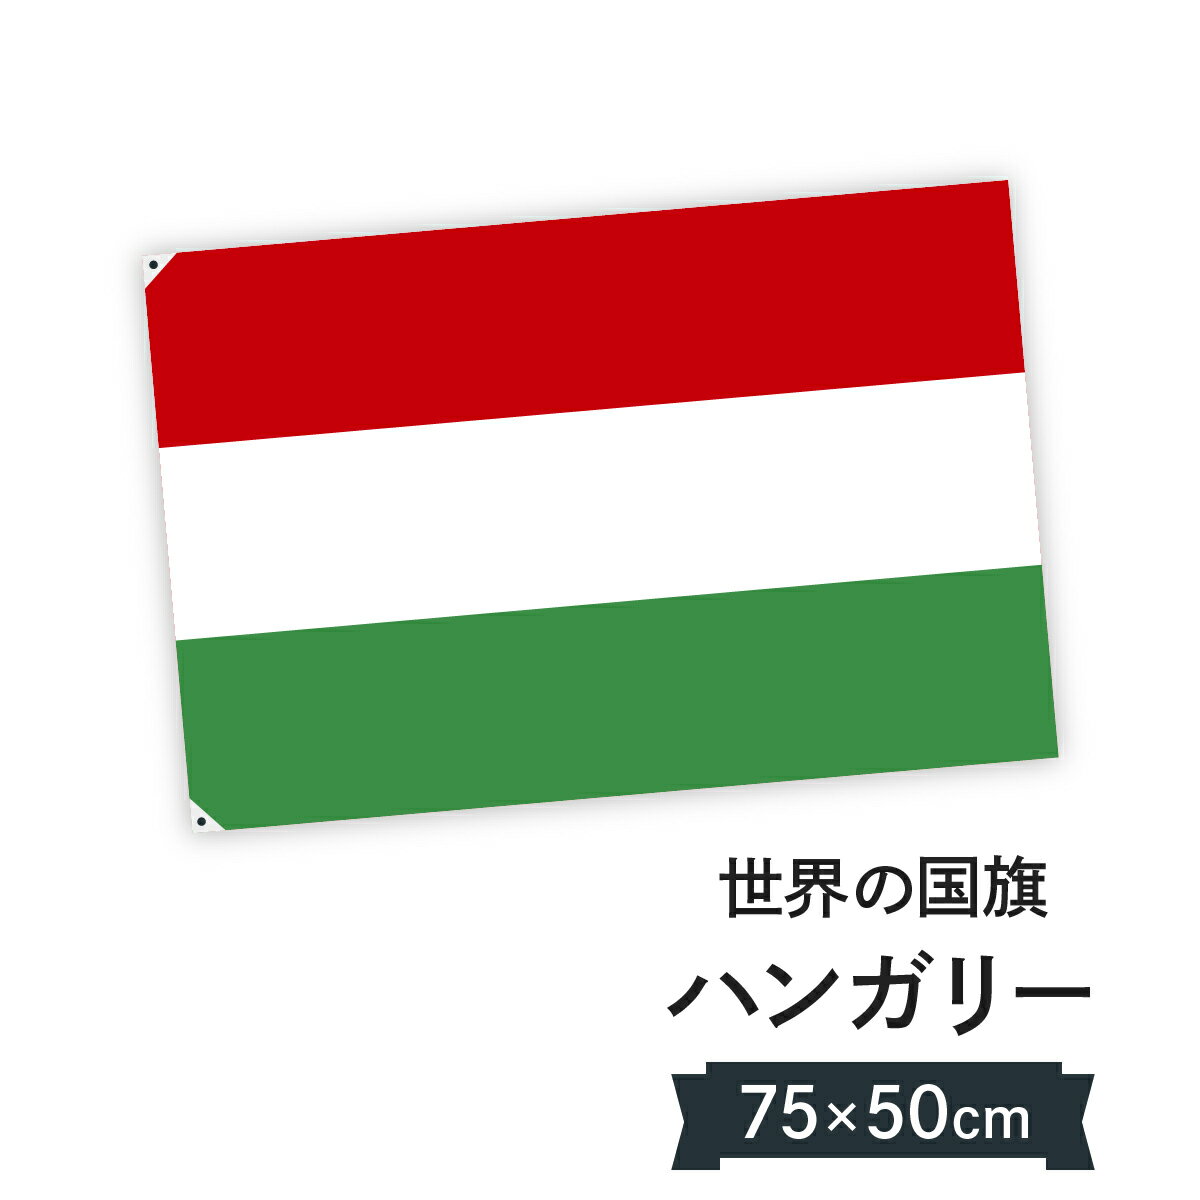 楽天市場 ハンガリー 国旗 W150cm H100cm グッズプロ